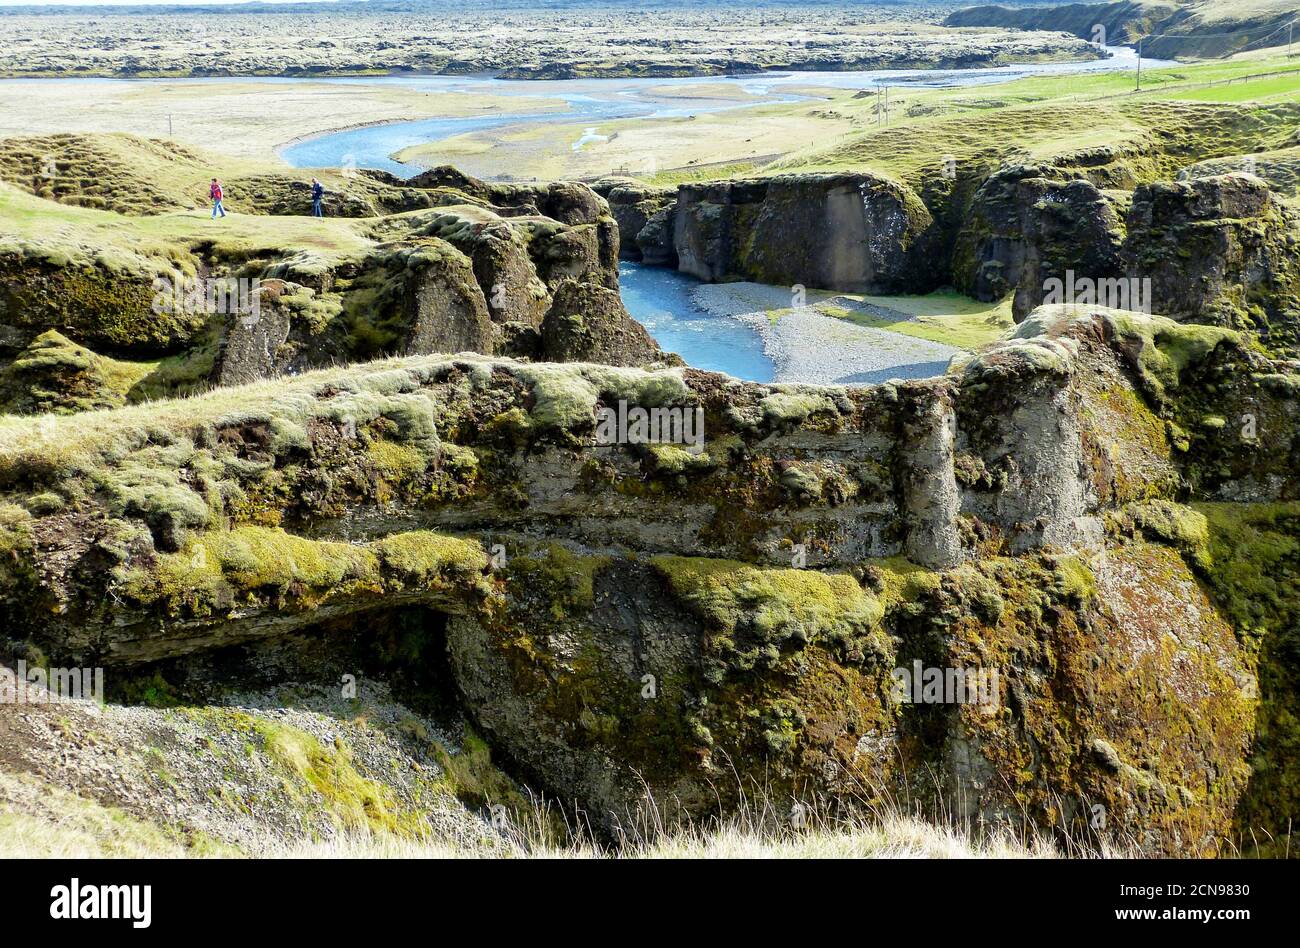 Fjadrargljufur Canyon, Island. Fjadra River. Wunderbare isländische Landschaft. Grüne moosige Klippen. Malerische Schlucht hat steile Wände. Riesiger Canyon. Stockfoto